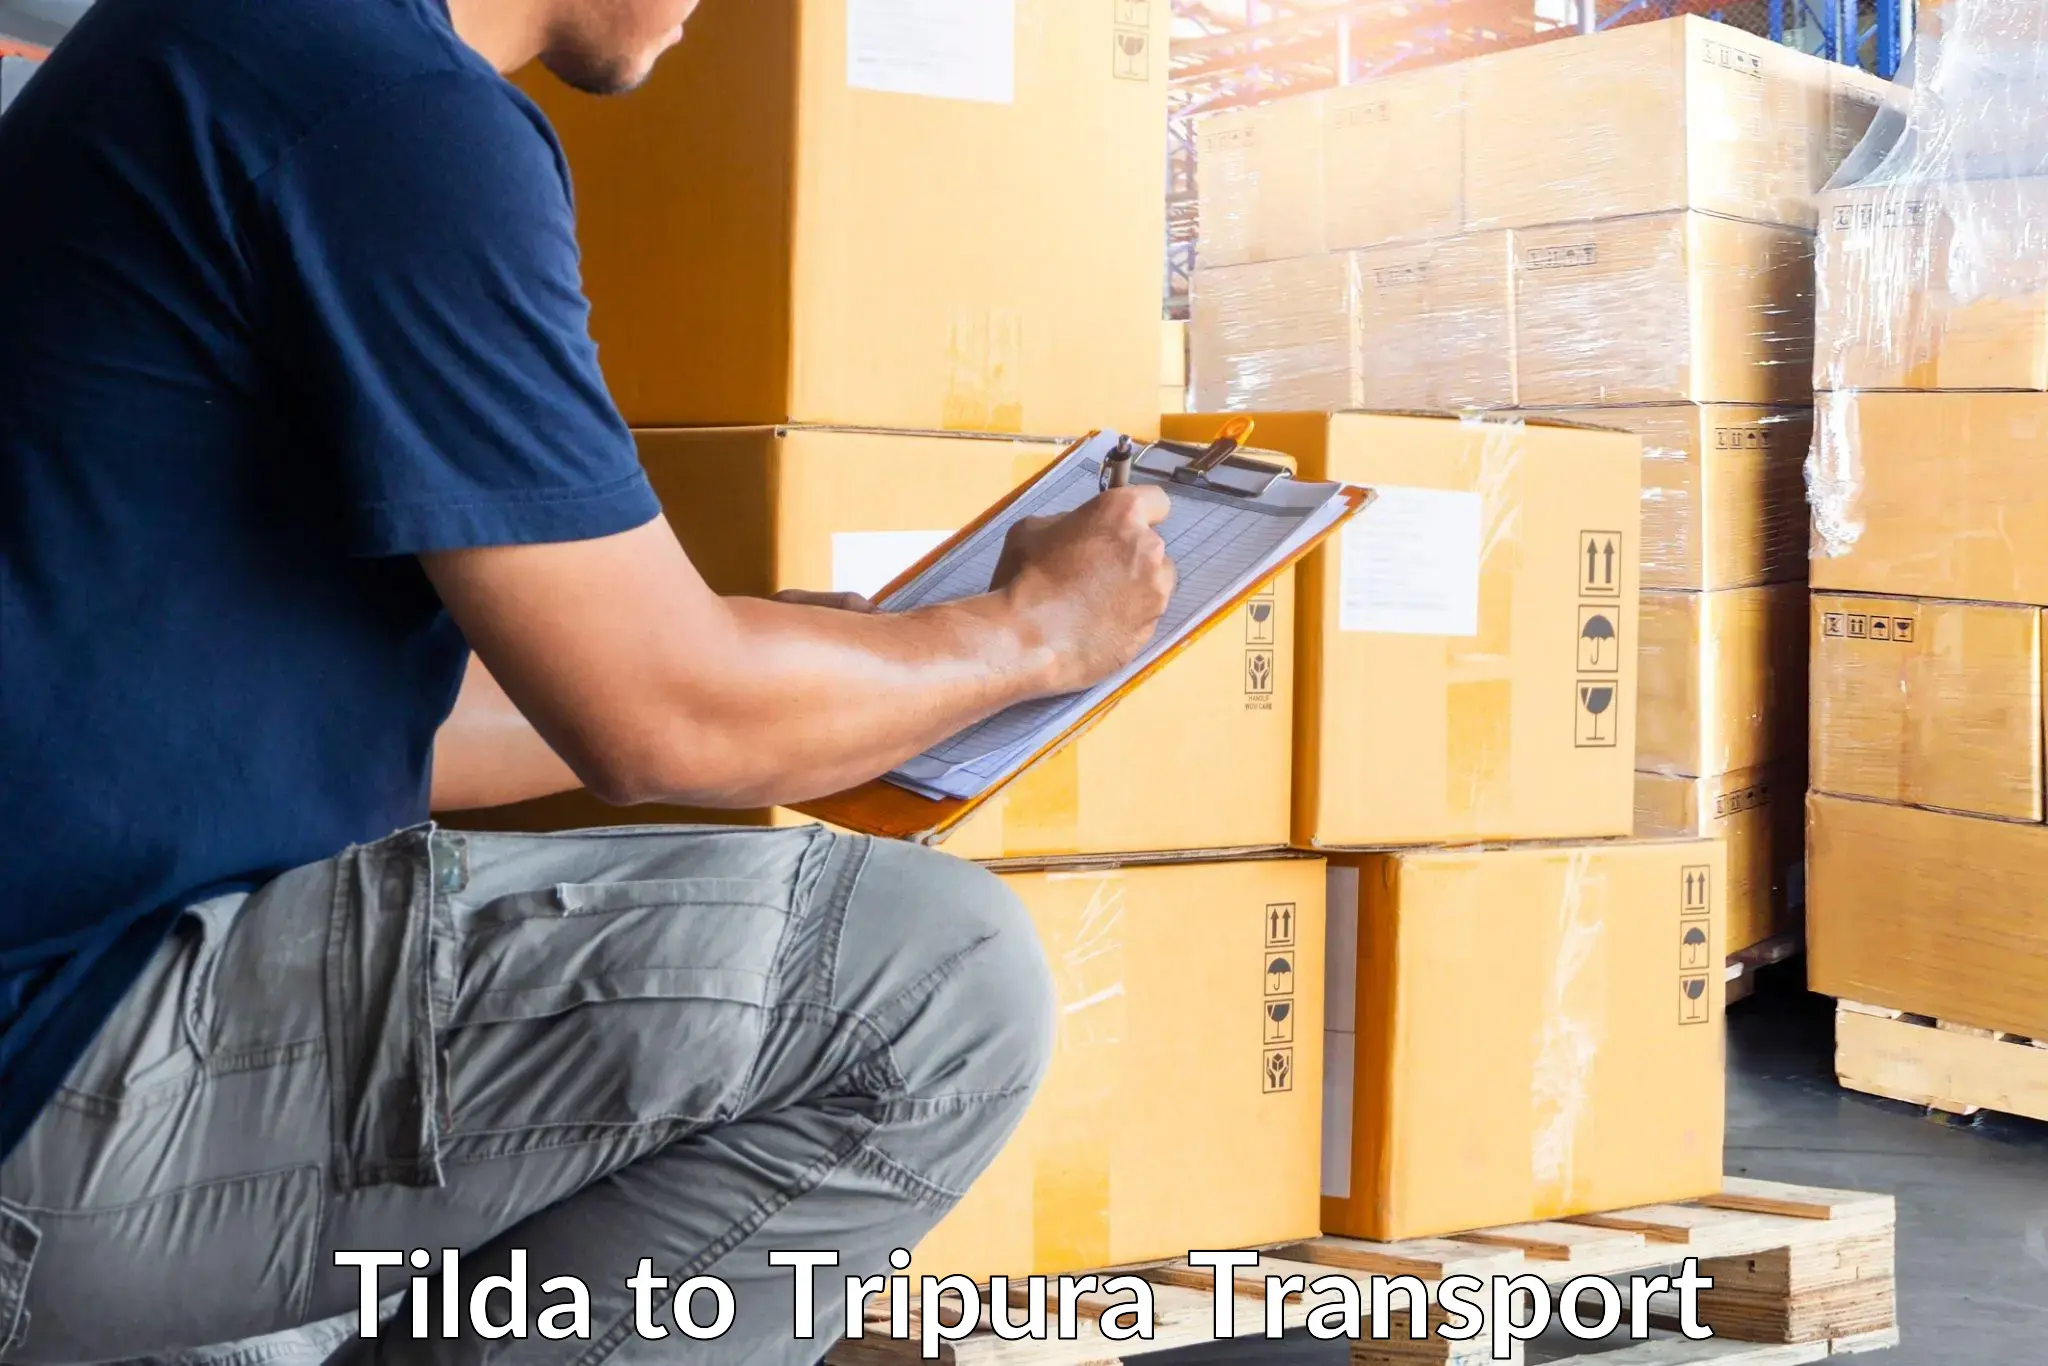 India truck logistics services in Tilda to Udaipur Tripura